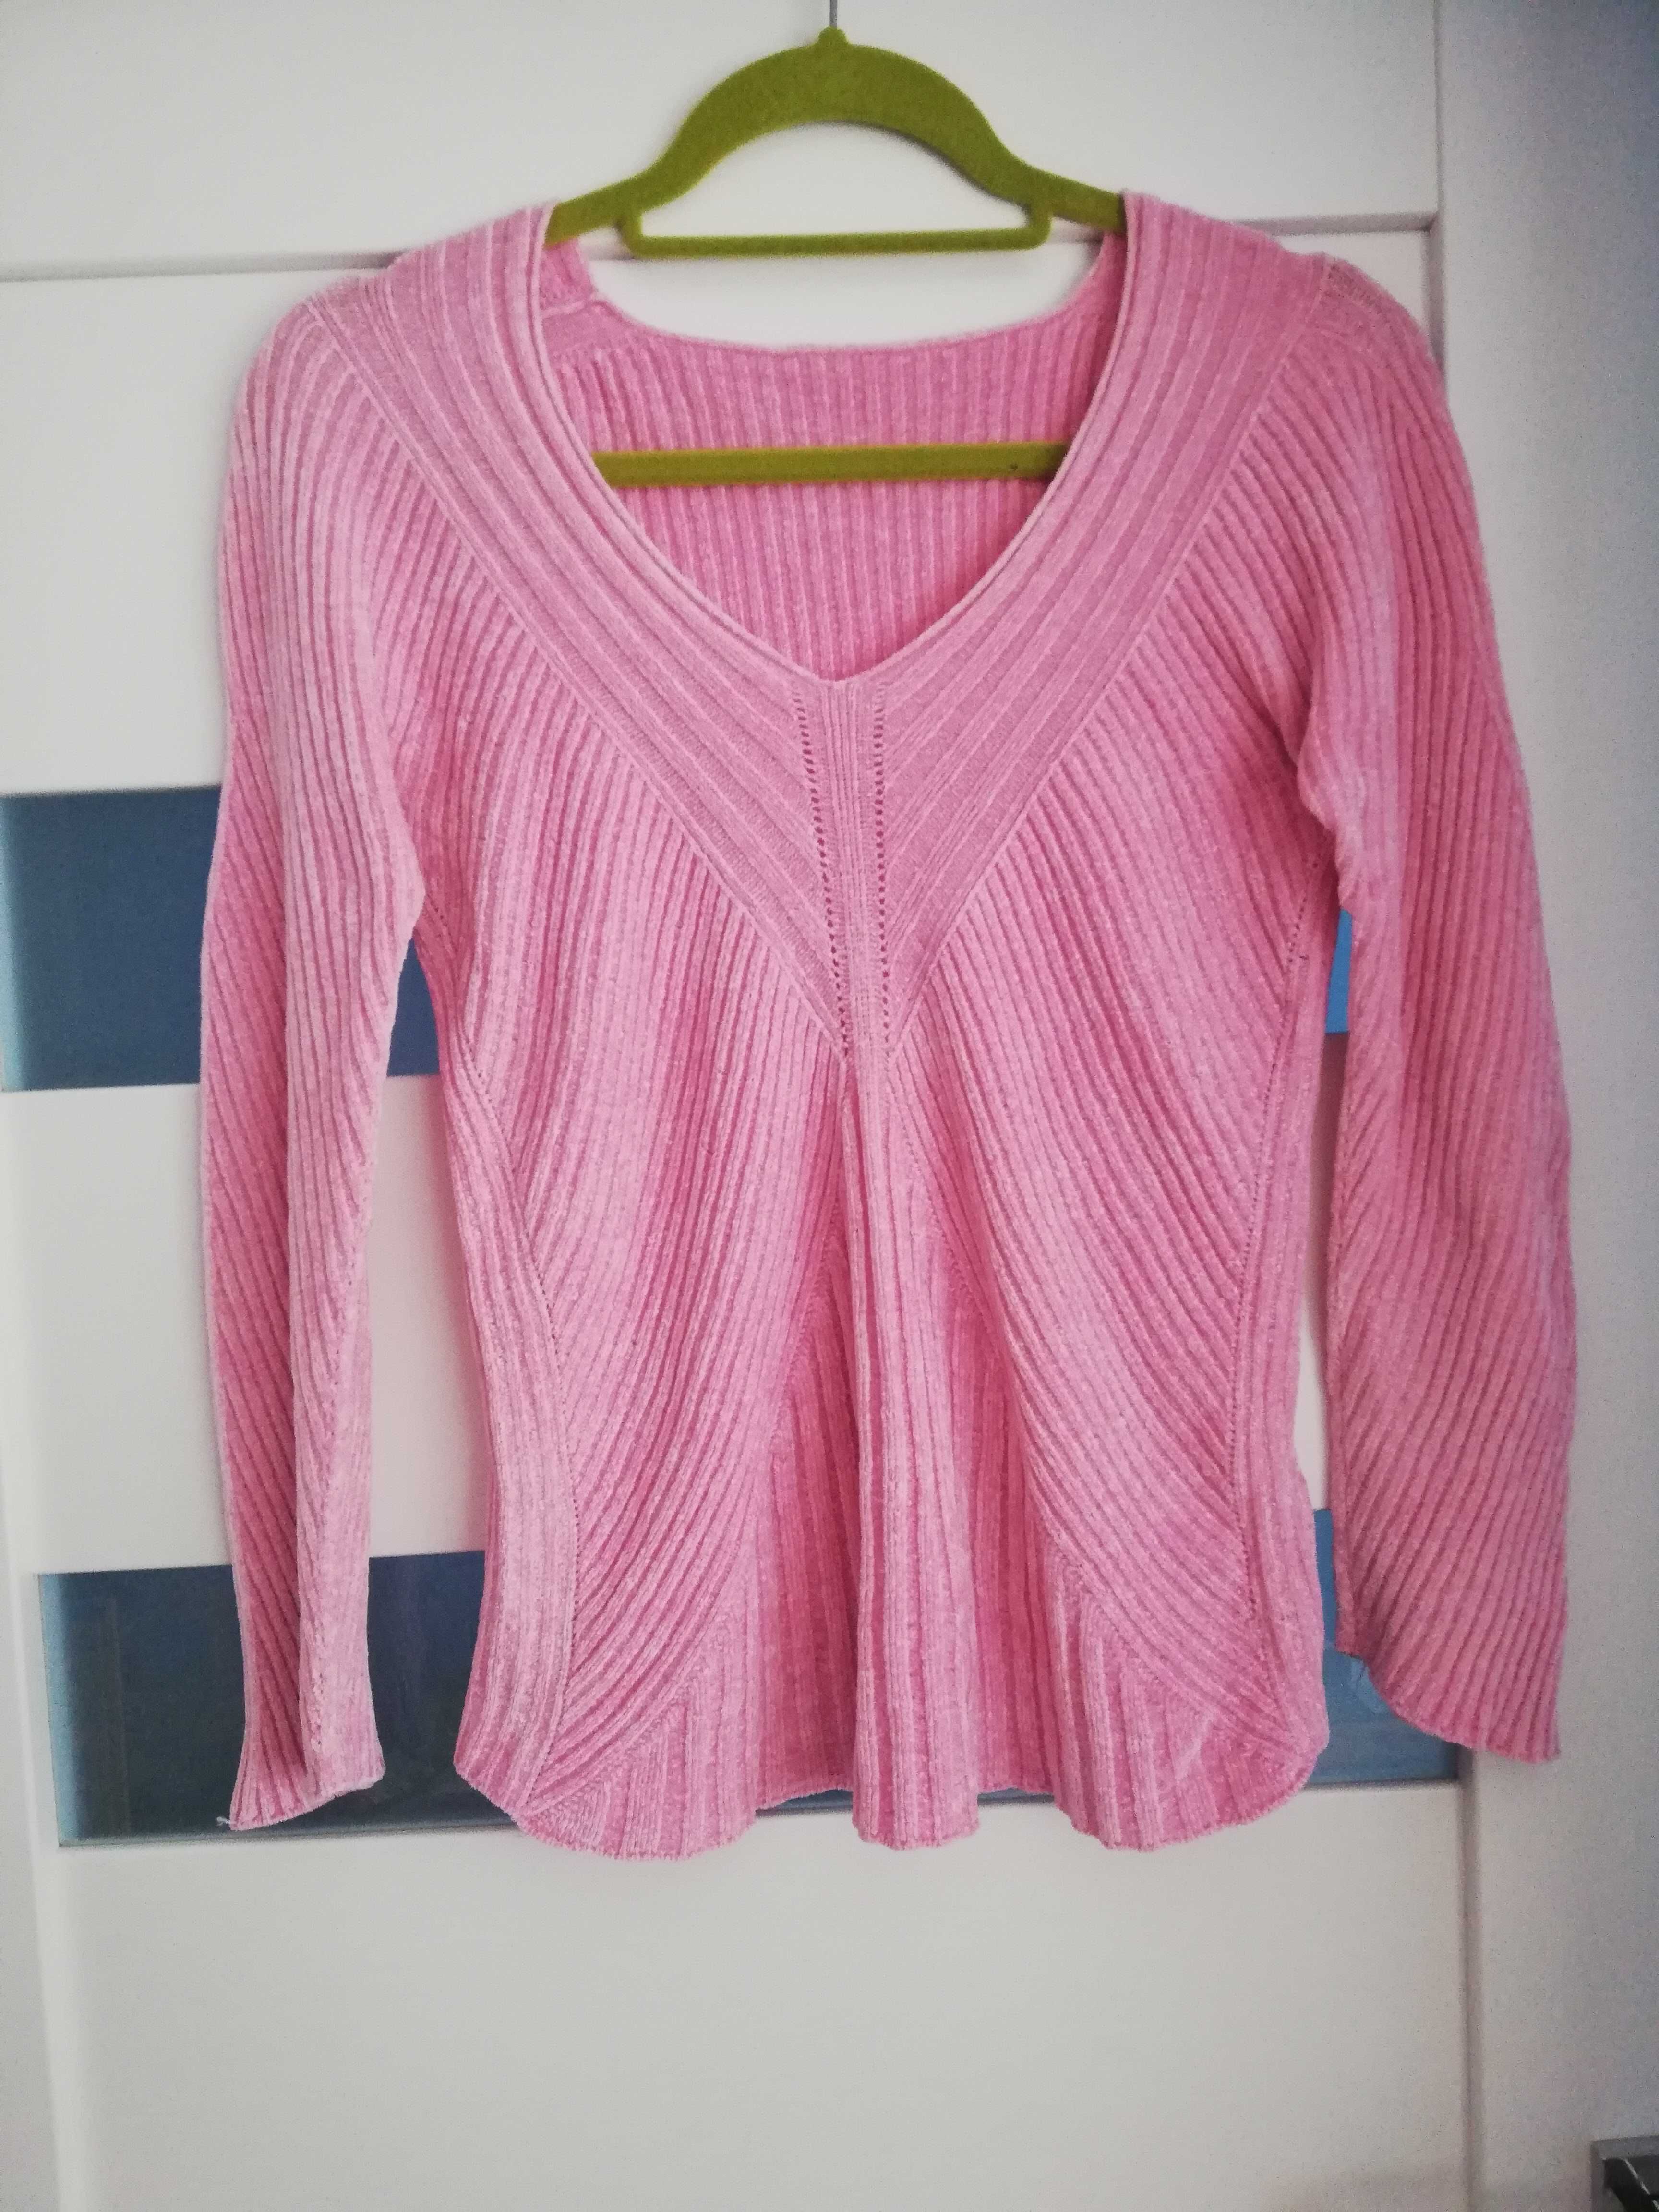 śliczny mięciutki sweterek/sweter ciążowy różowy r 36